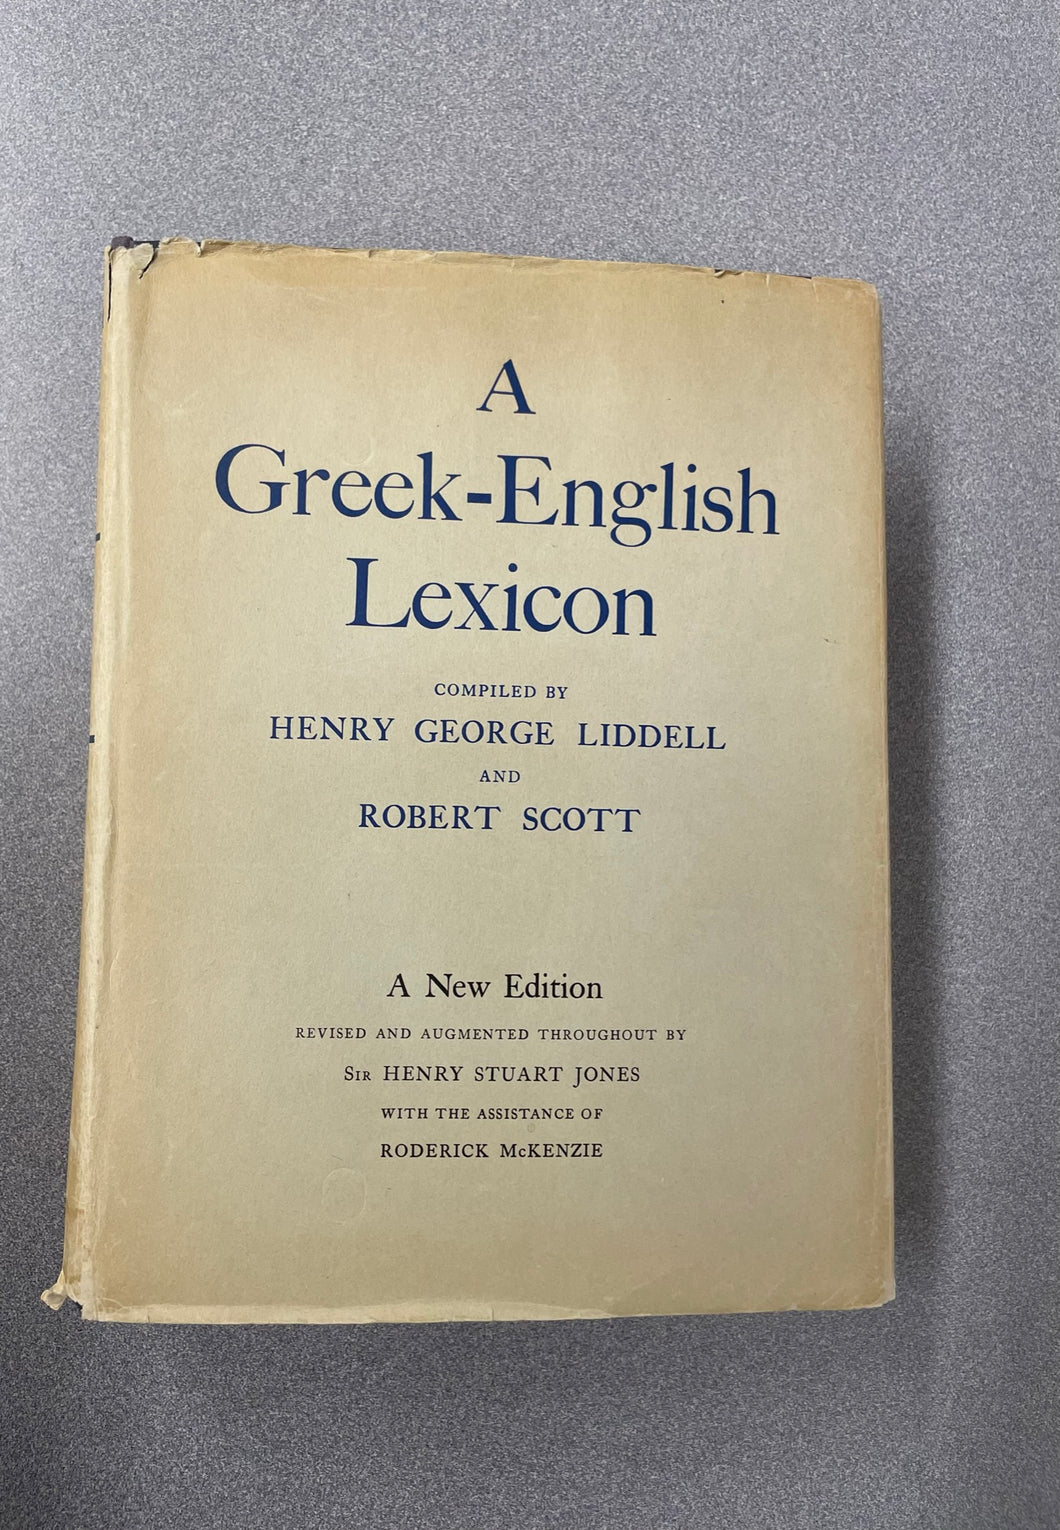 A Greek-English Lexicon: a New Edition, Liddell, Henry George, ed [1961] FL 3/23